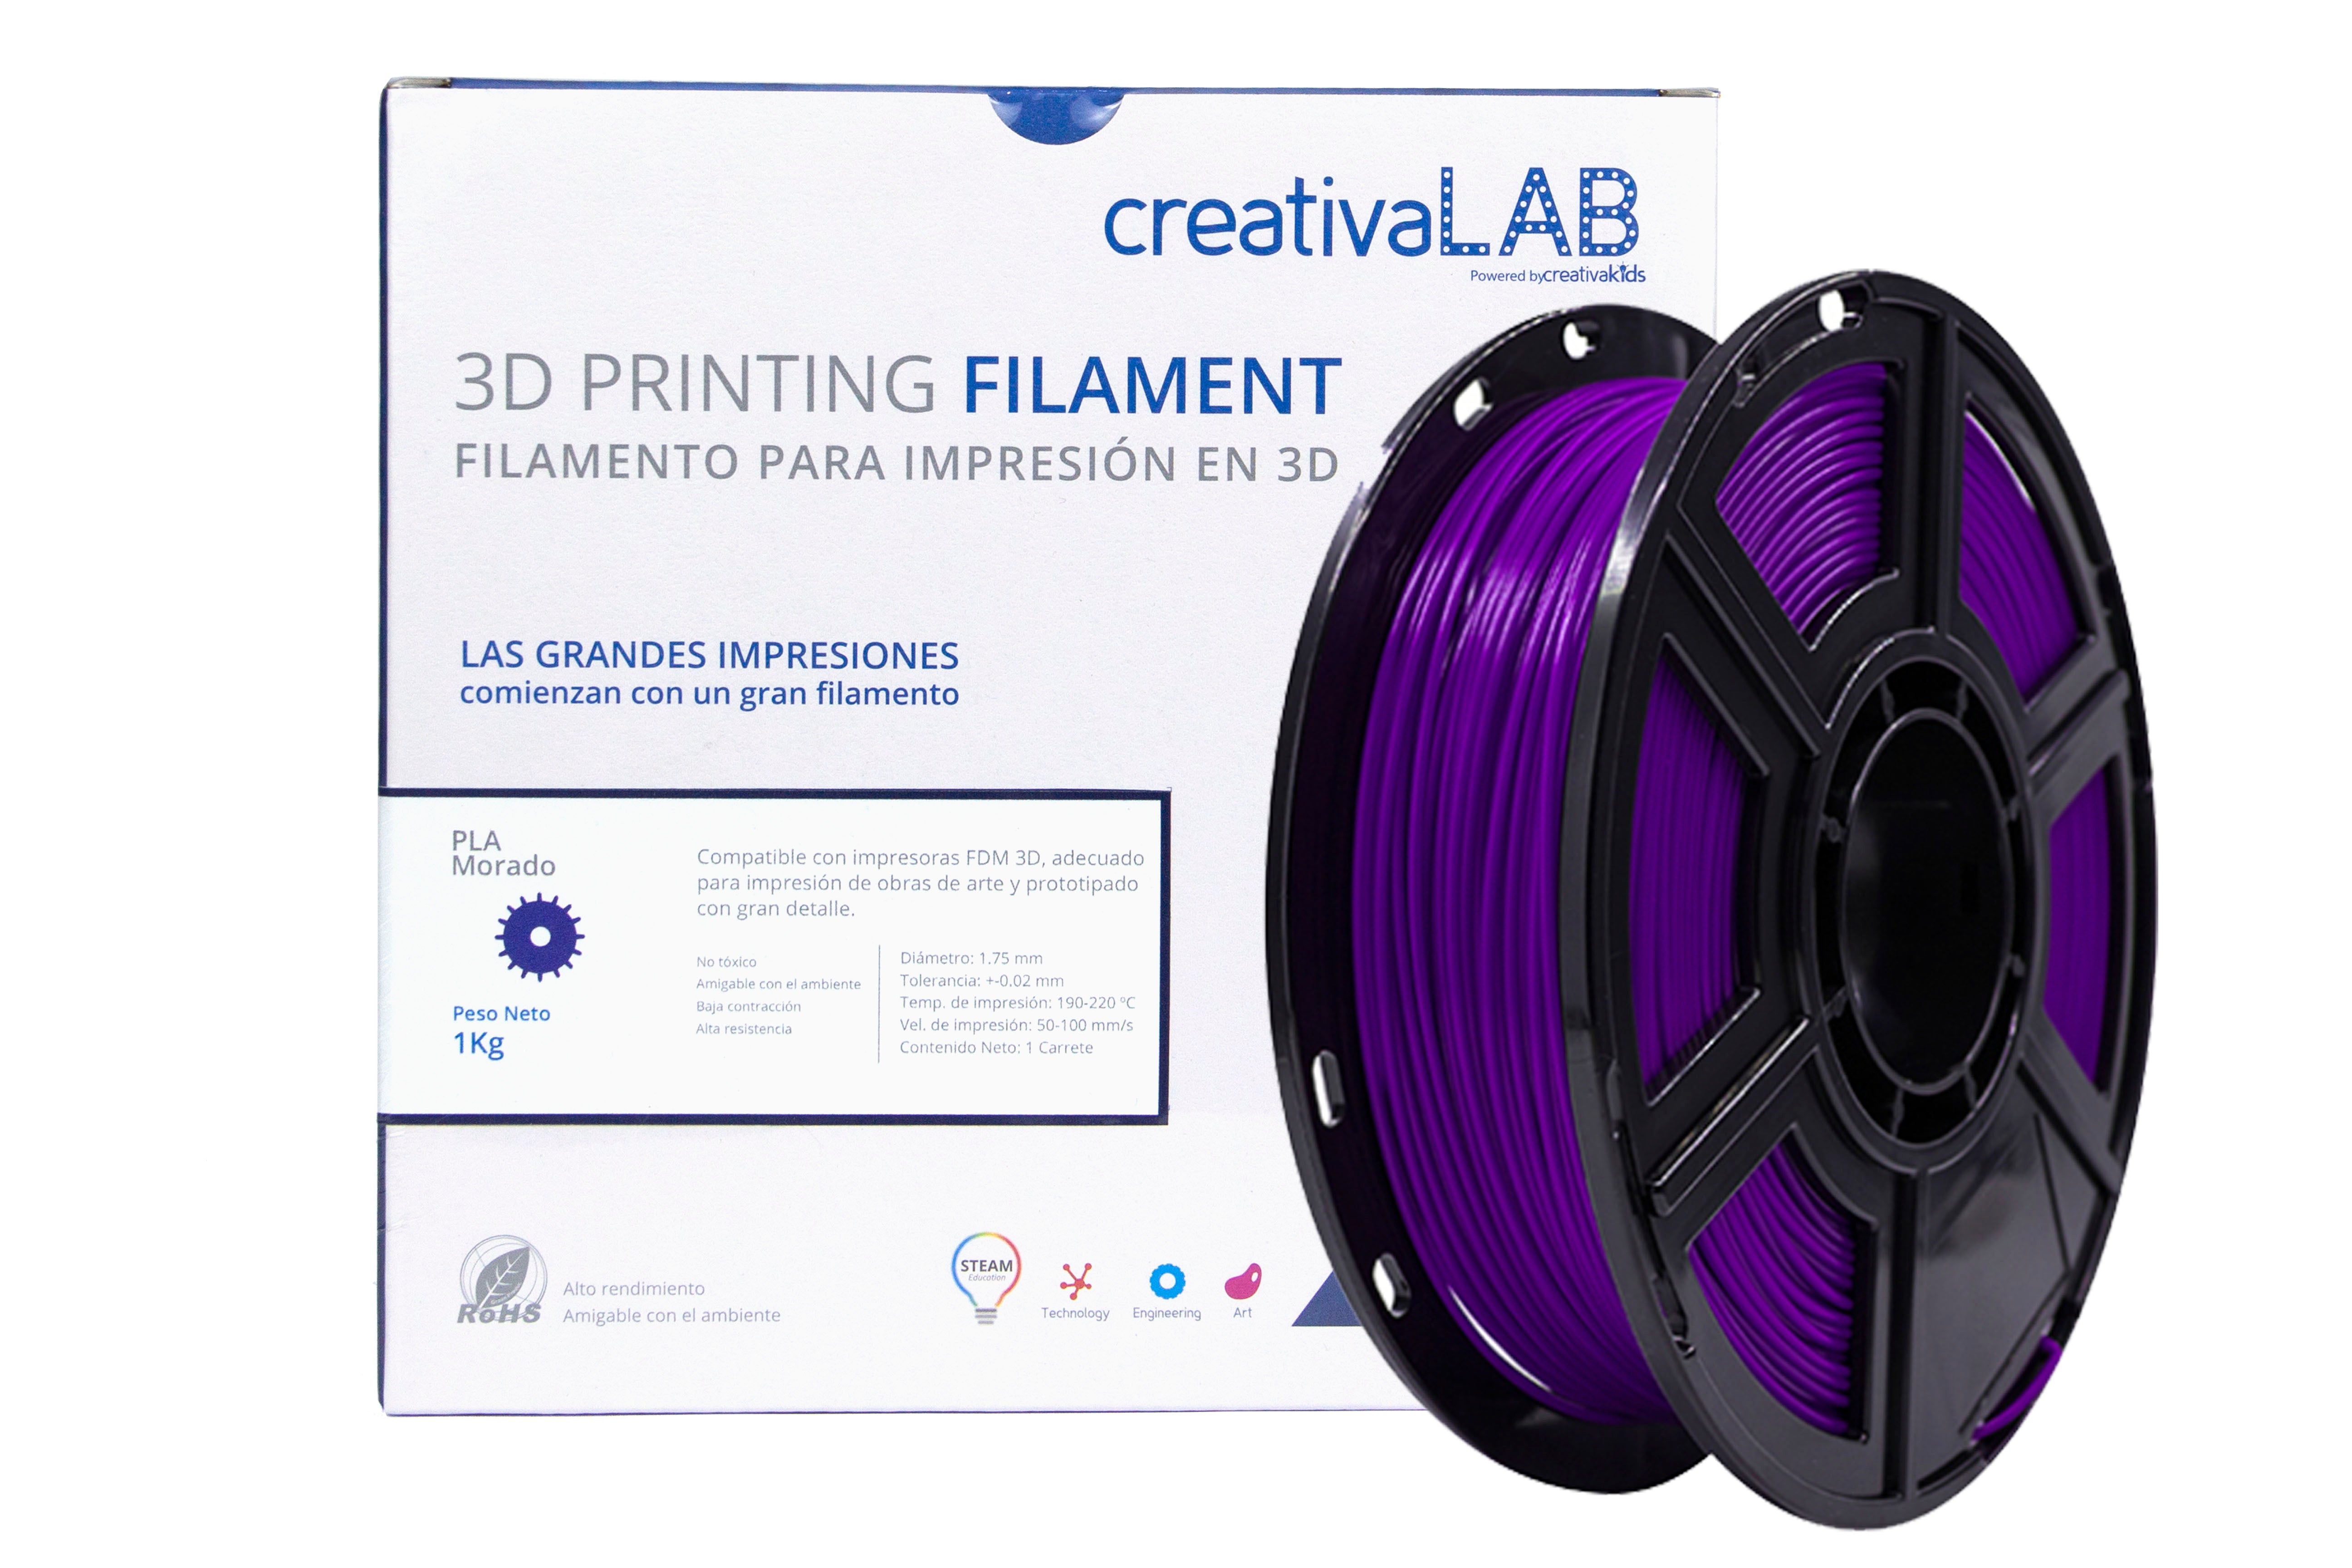 Filamento para impresora 3D / PLA 1kg marca Htm